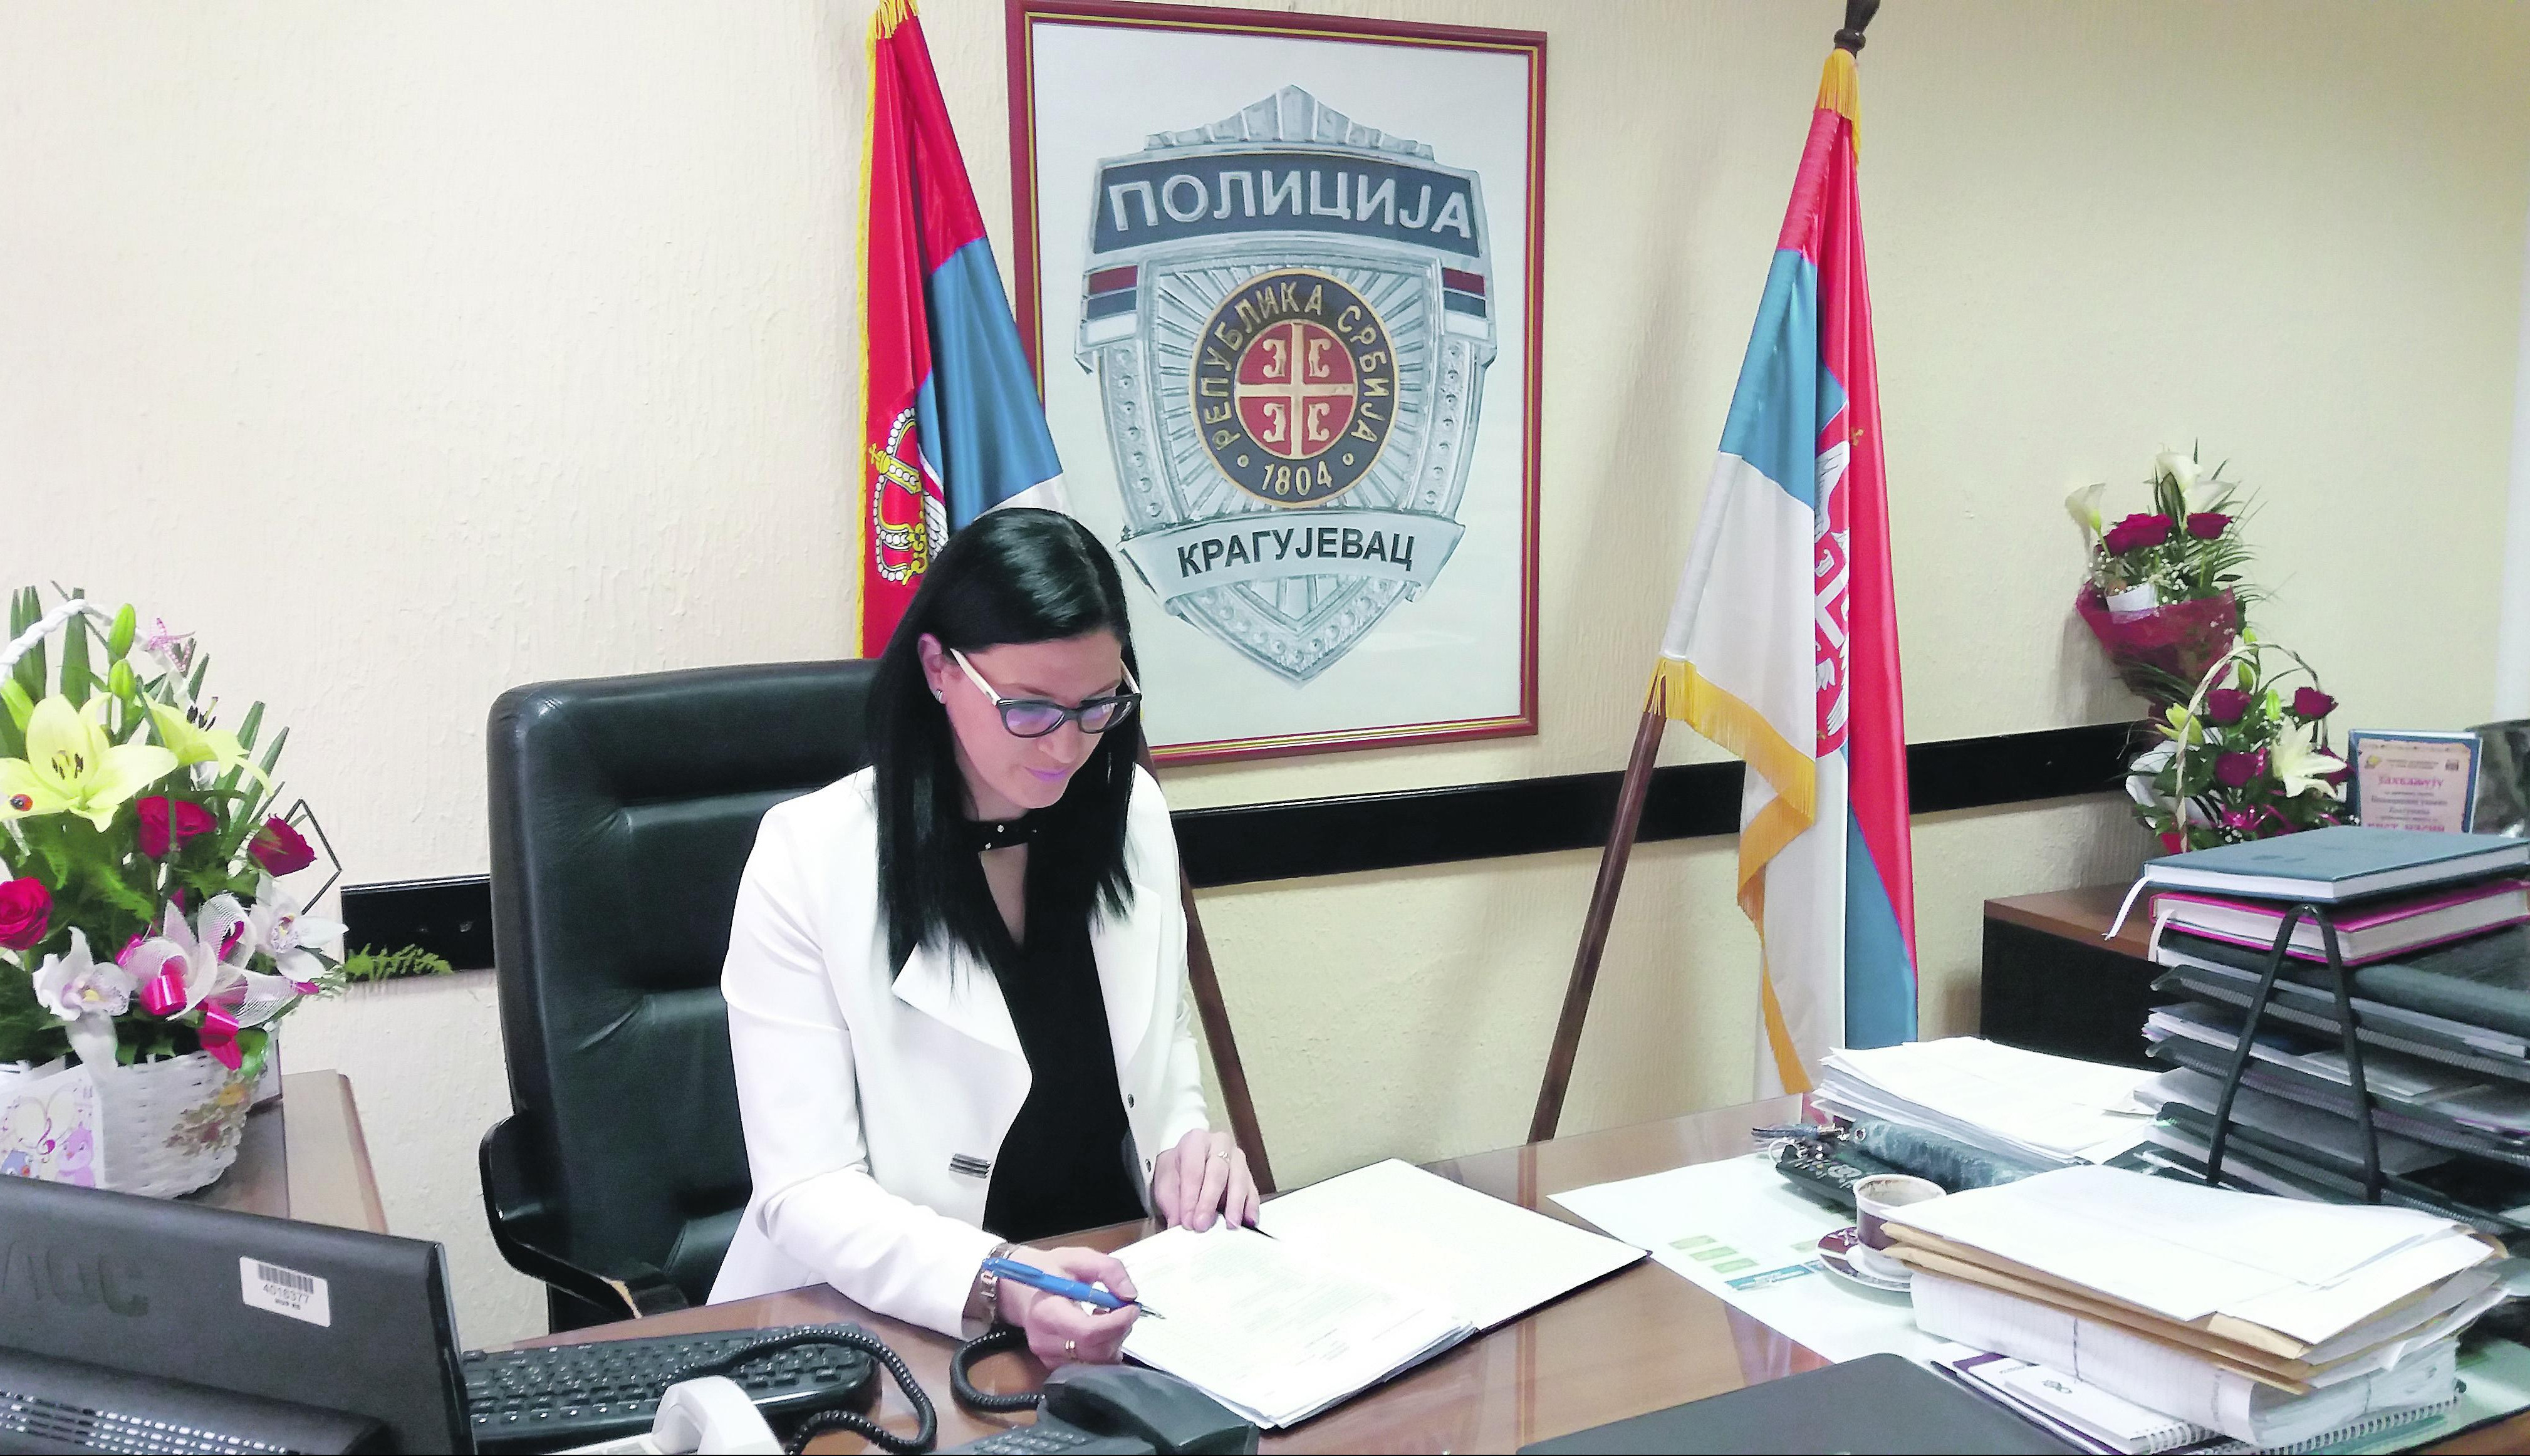 KRAGUJEVAC ĆE OSTATI NAJBEZBEDNIJI GRAD U SRBIJI: Jasmina Rajković, "ČELIČNA LEJDI" policije!